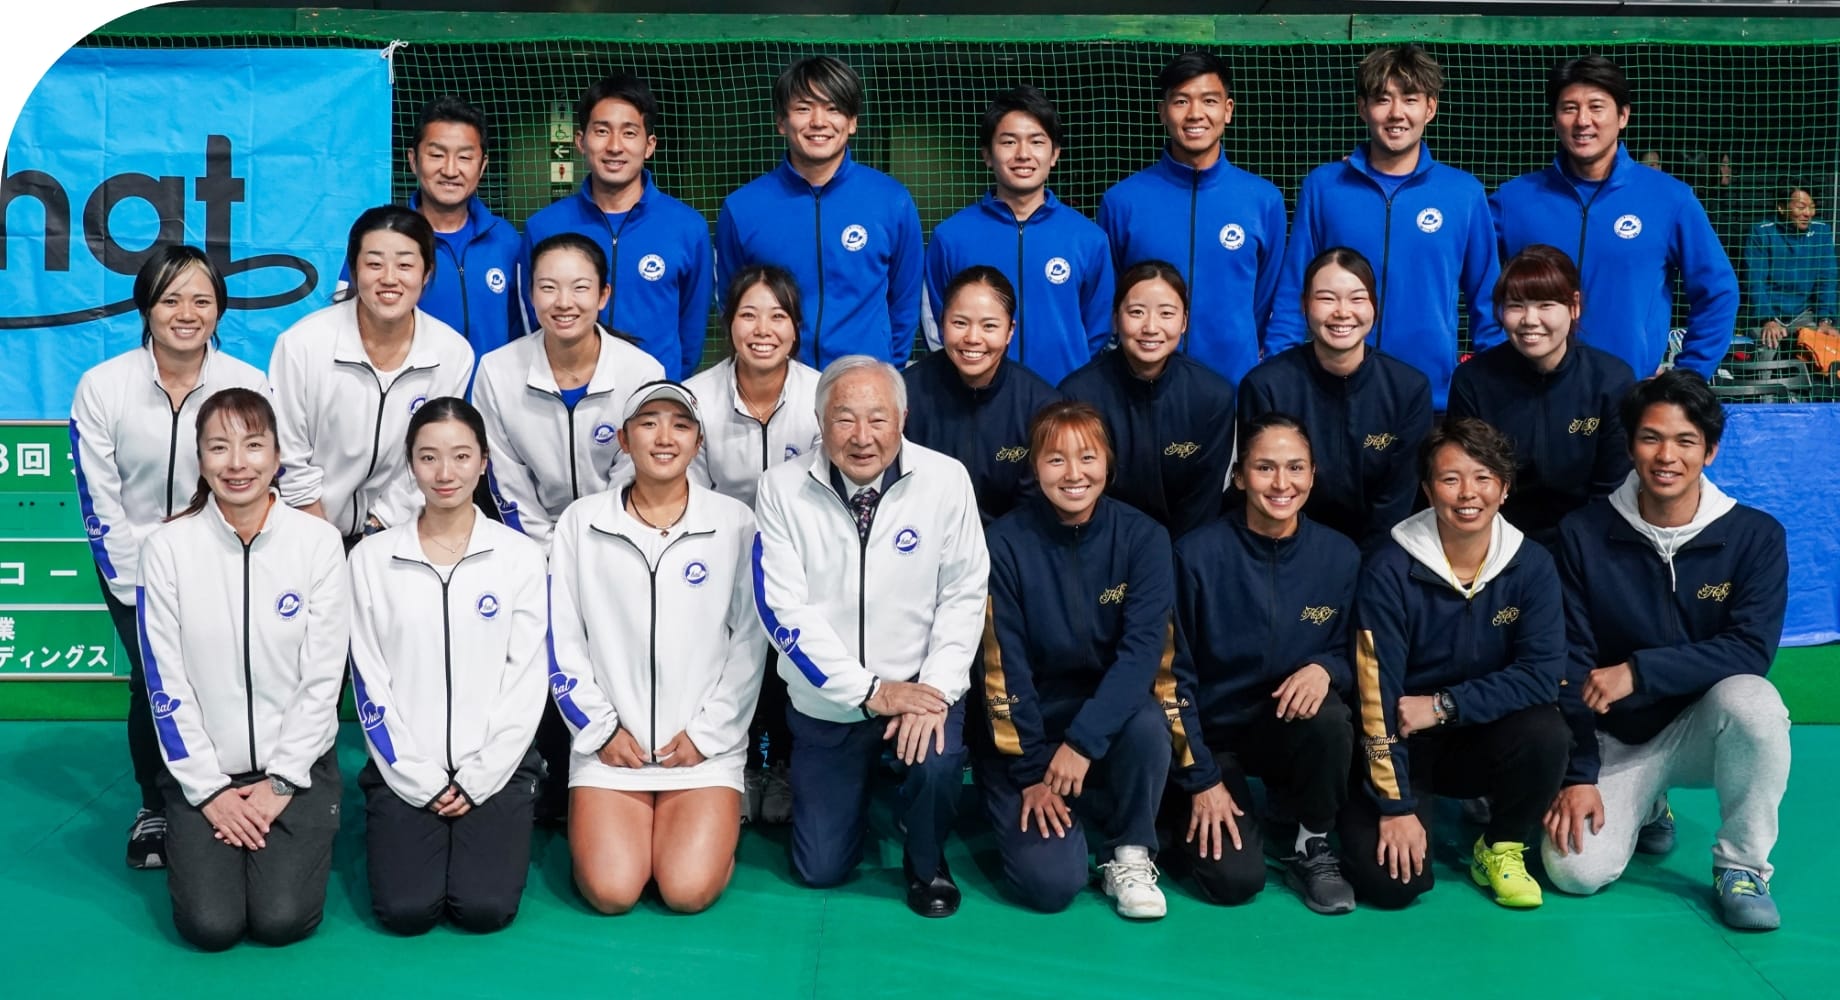 橋本総業ホールディングステニスチームの集合写真